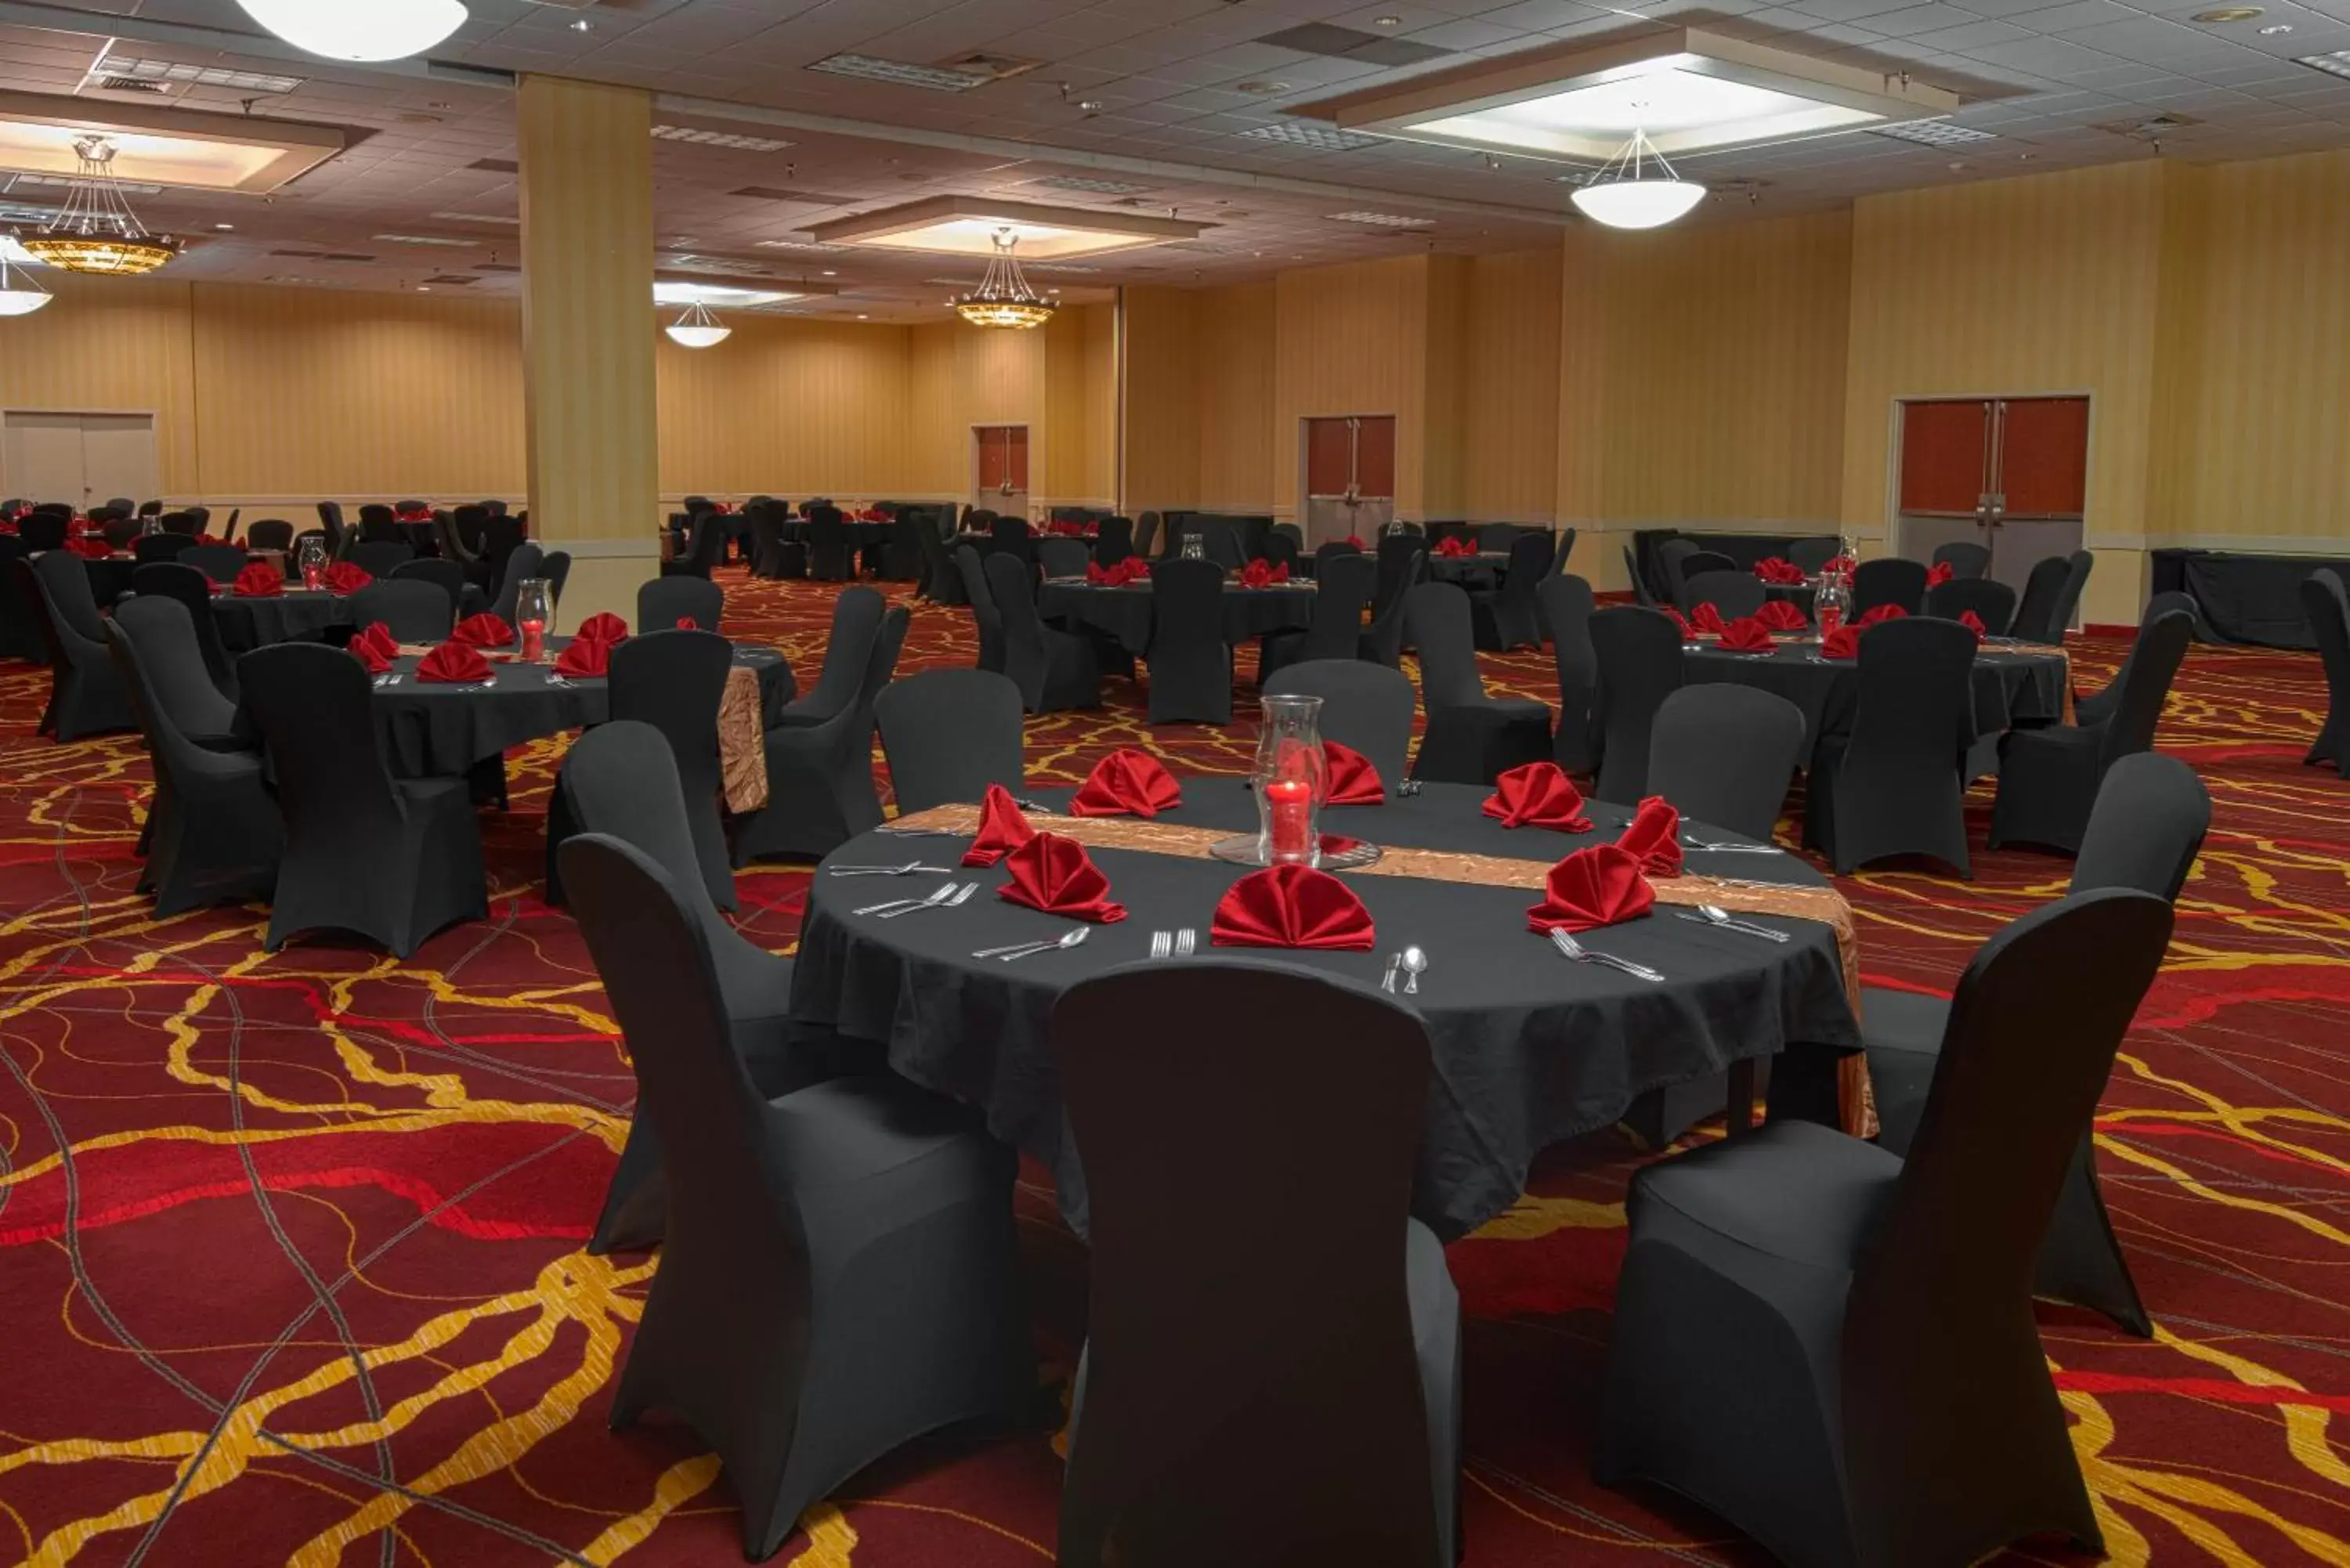 Banquet/Function facilities, Banquet Facilities in MCM Elegante Hotel & Suites Lubbock